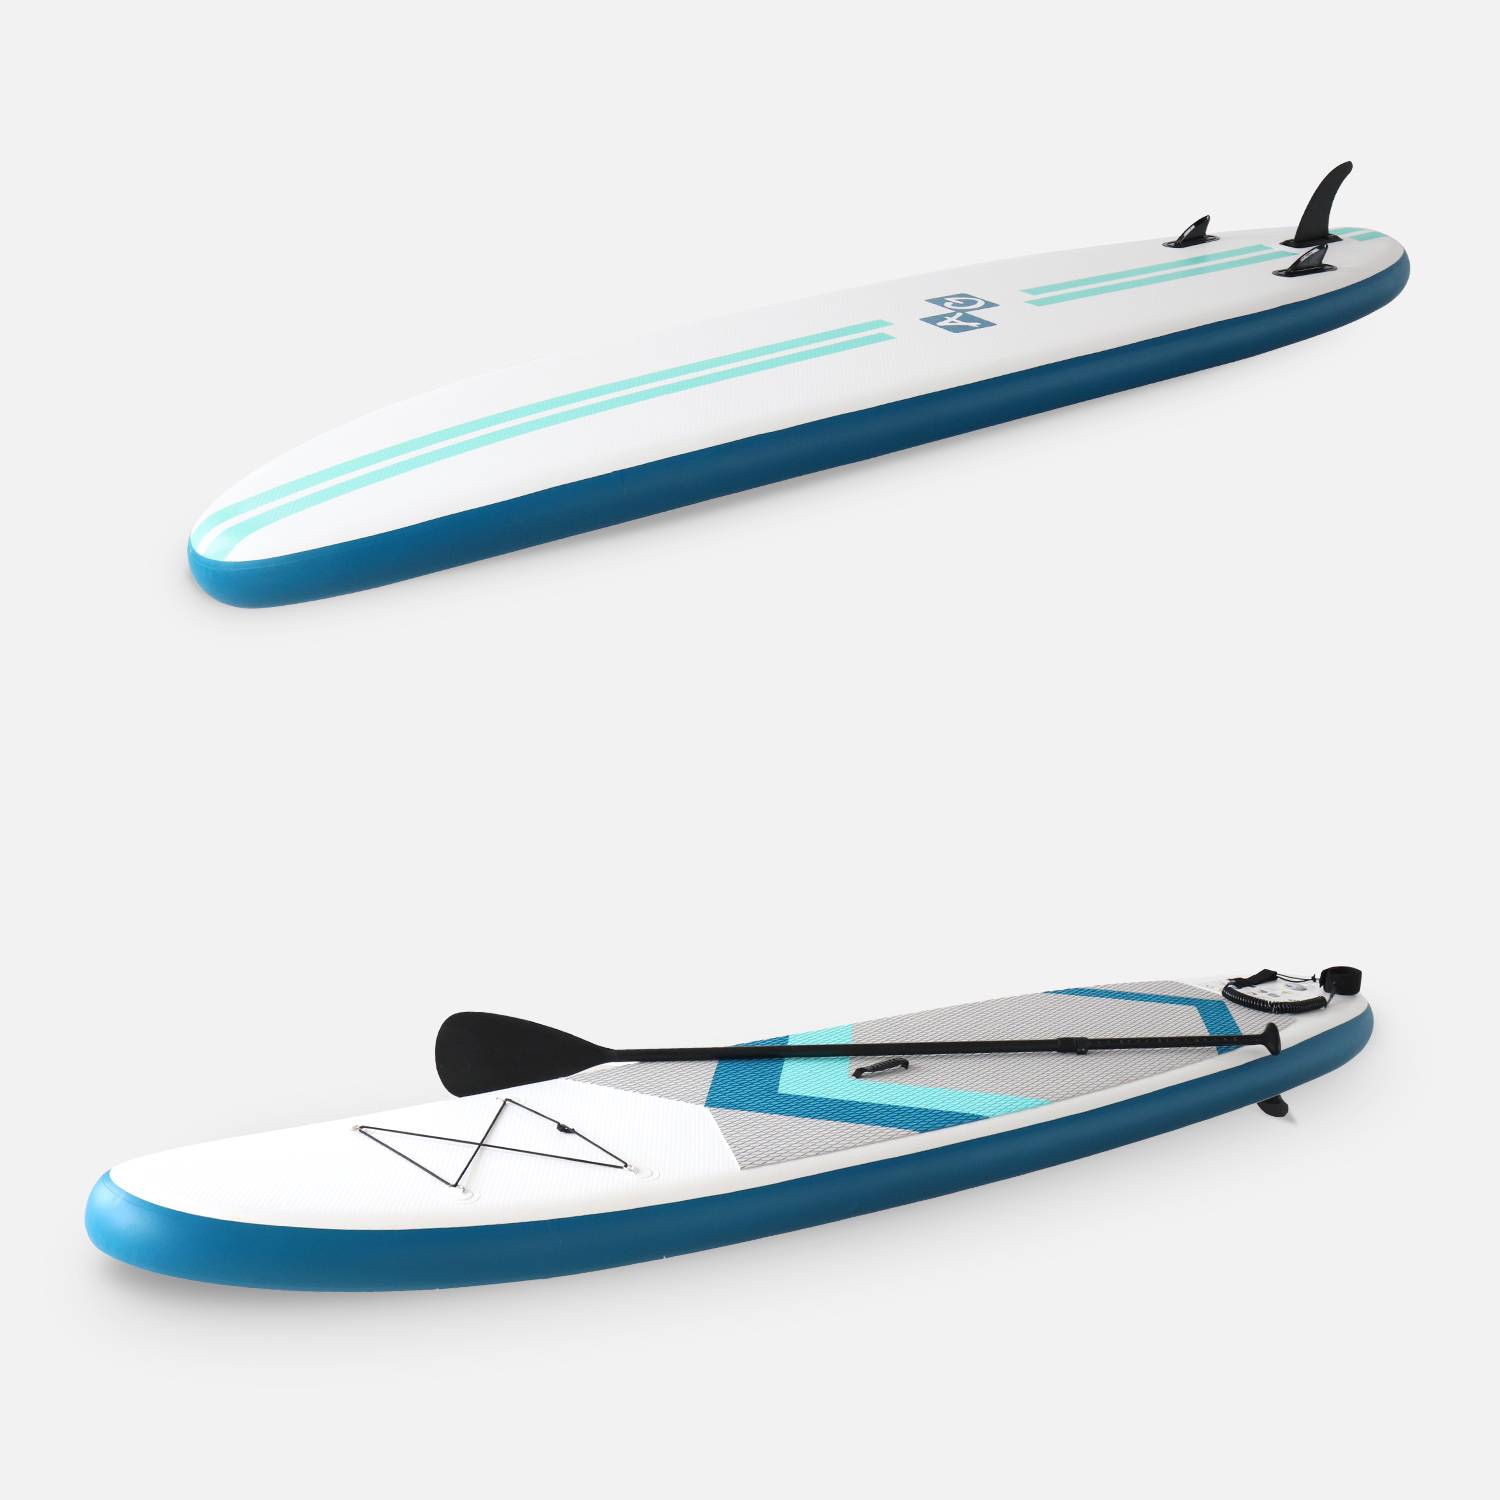 Opblaasbare stand-up paddle pack LIO 11'10" met hogedrukpomp, peddel, leash en opbergzak Photo2